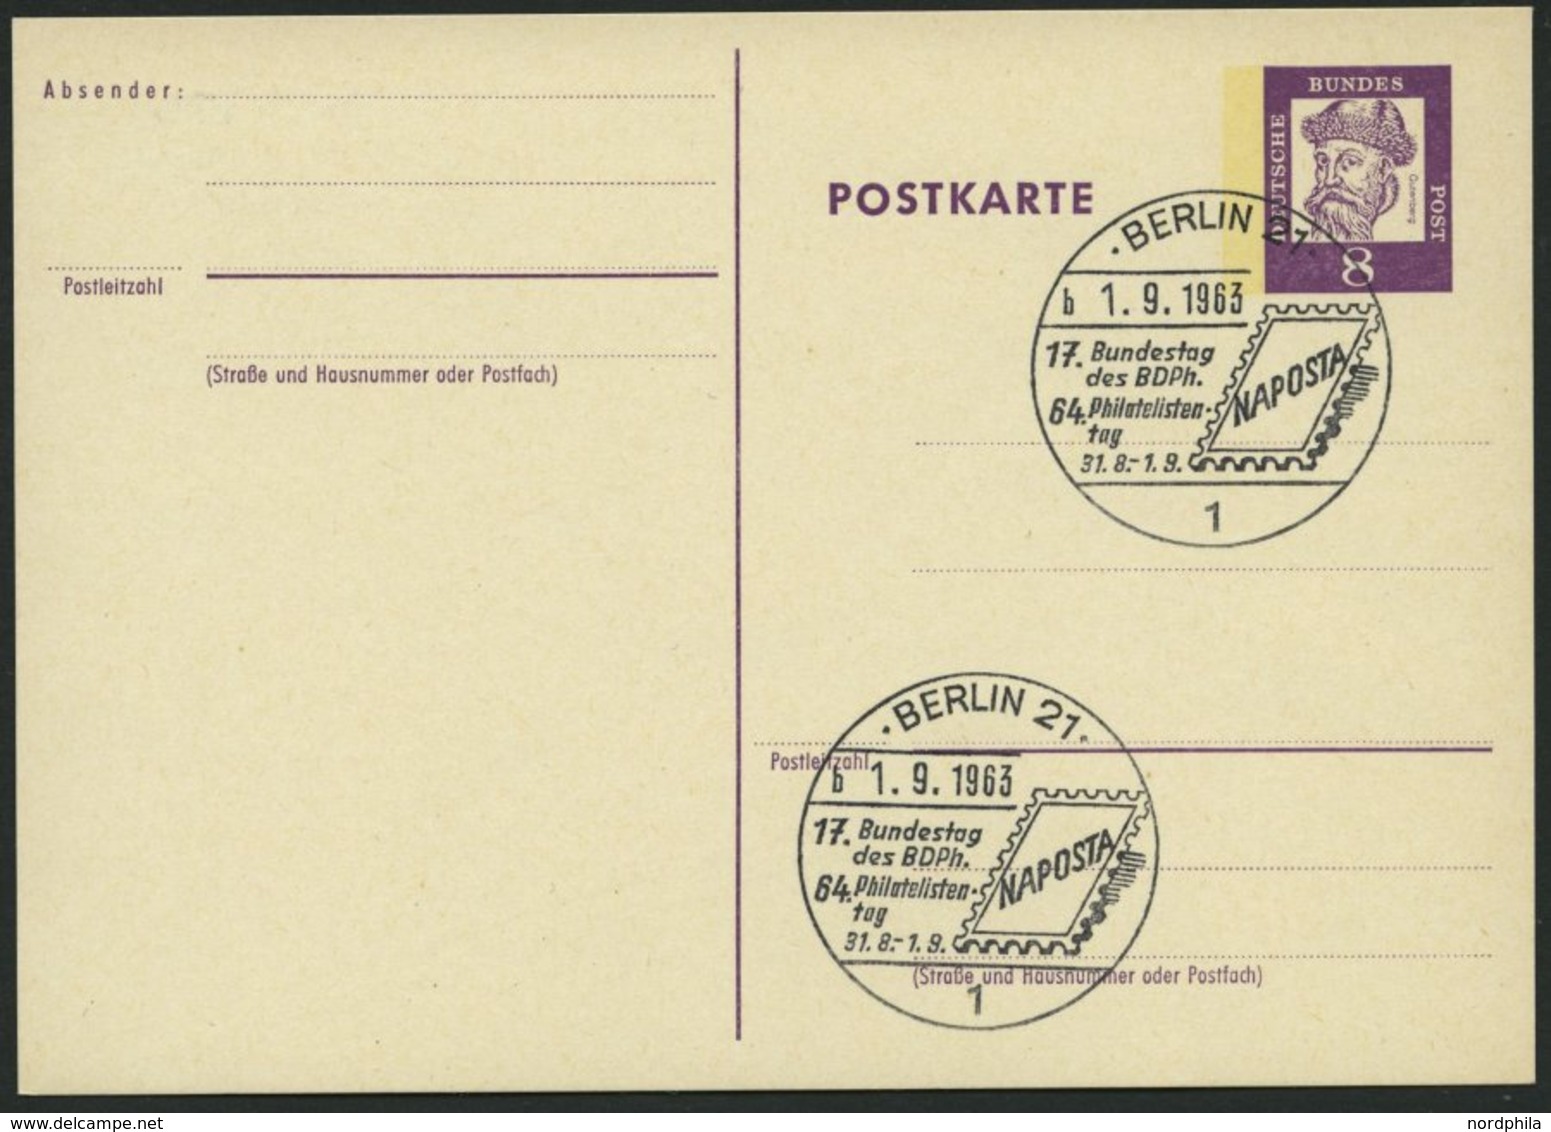 GANZSACHEN P 73 BRIEF, 1962, 8 Pf. Gutenberg, Postkarte In Grotesk-Schrift, Leer Gestempelt Mit Sonderstempel BERLIN 21  - Collezioni